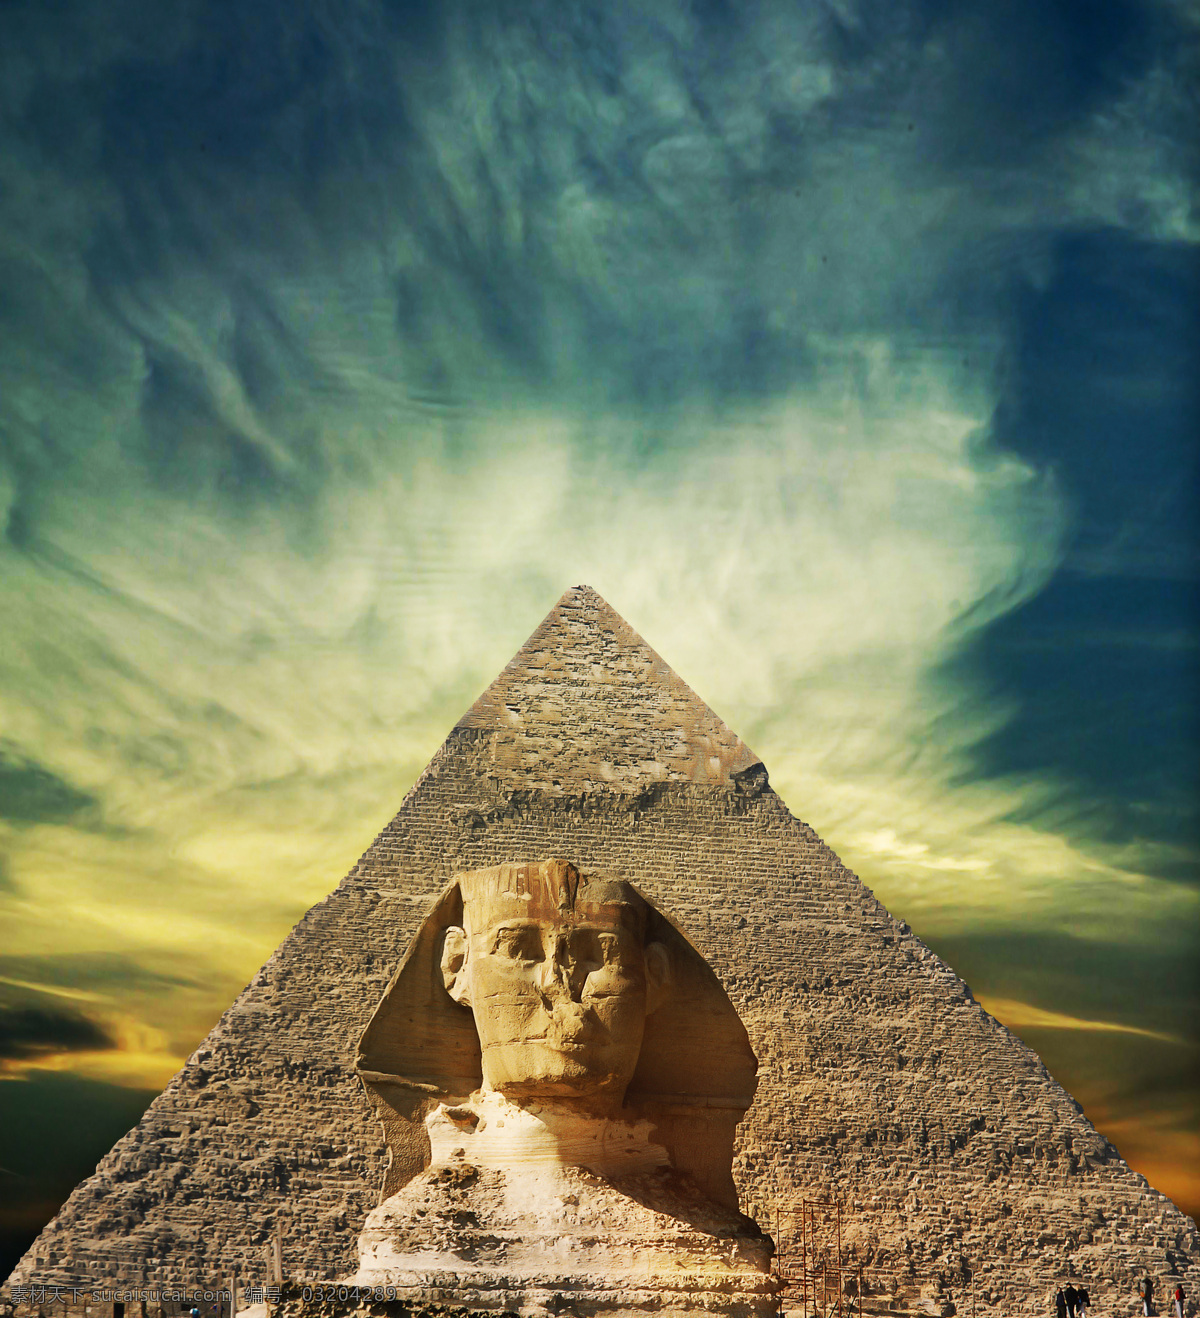 唯美金字塔 埃及 金字塔 建筑 文化 文物 历史 古建筑 壮观 狮身人面像 旅行 唯美 清新 意境 夕阳 落日 日落 黄昏 傍晚 旅游摄影 国外旅游